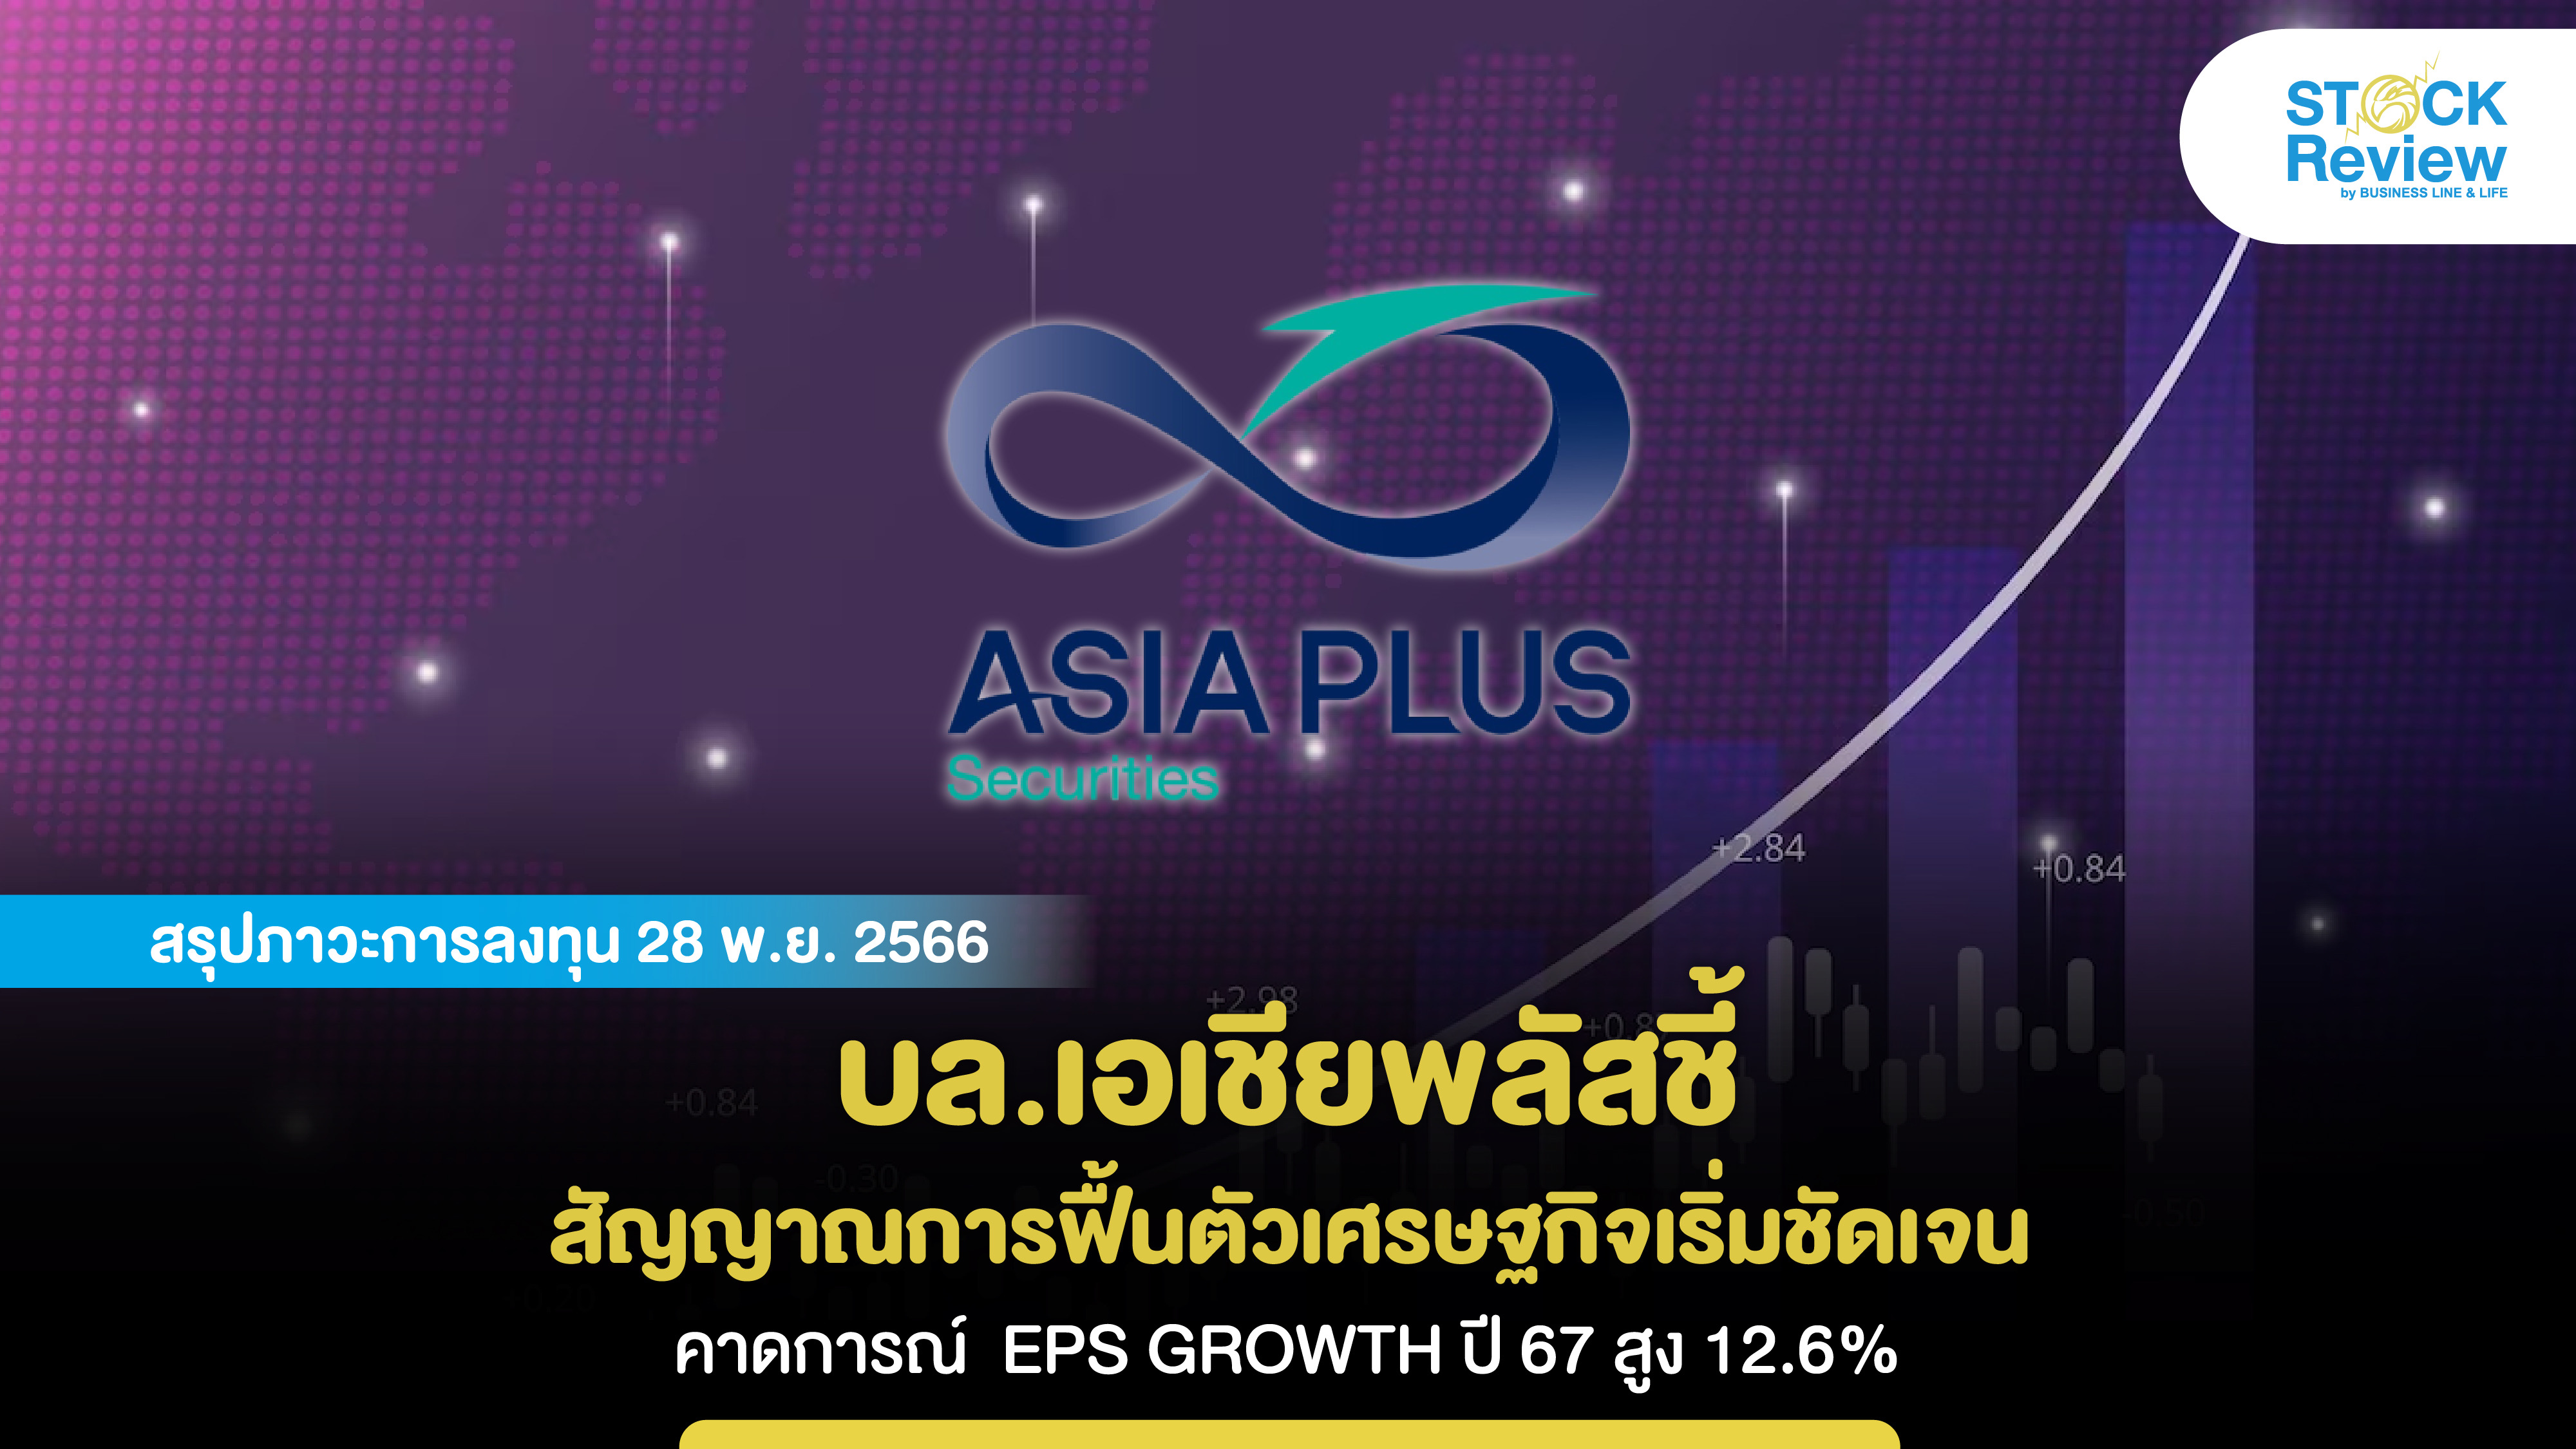 บล.เอเชียพลัสชี้ สัญญาณการฟื้นตัวเศรษฐกิจเริ่มชัดเจน คาดการณ์  EPS GROWTH ปี 67 สูง 12.6%